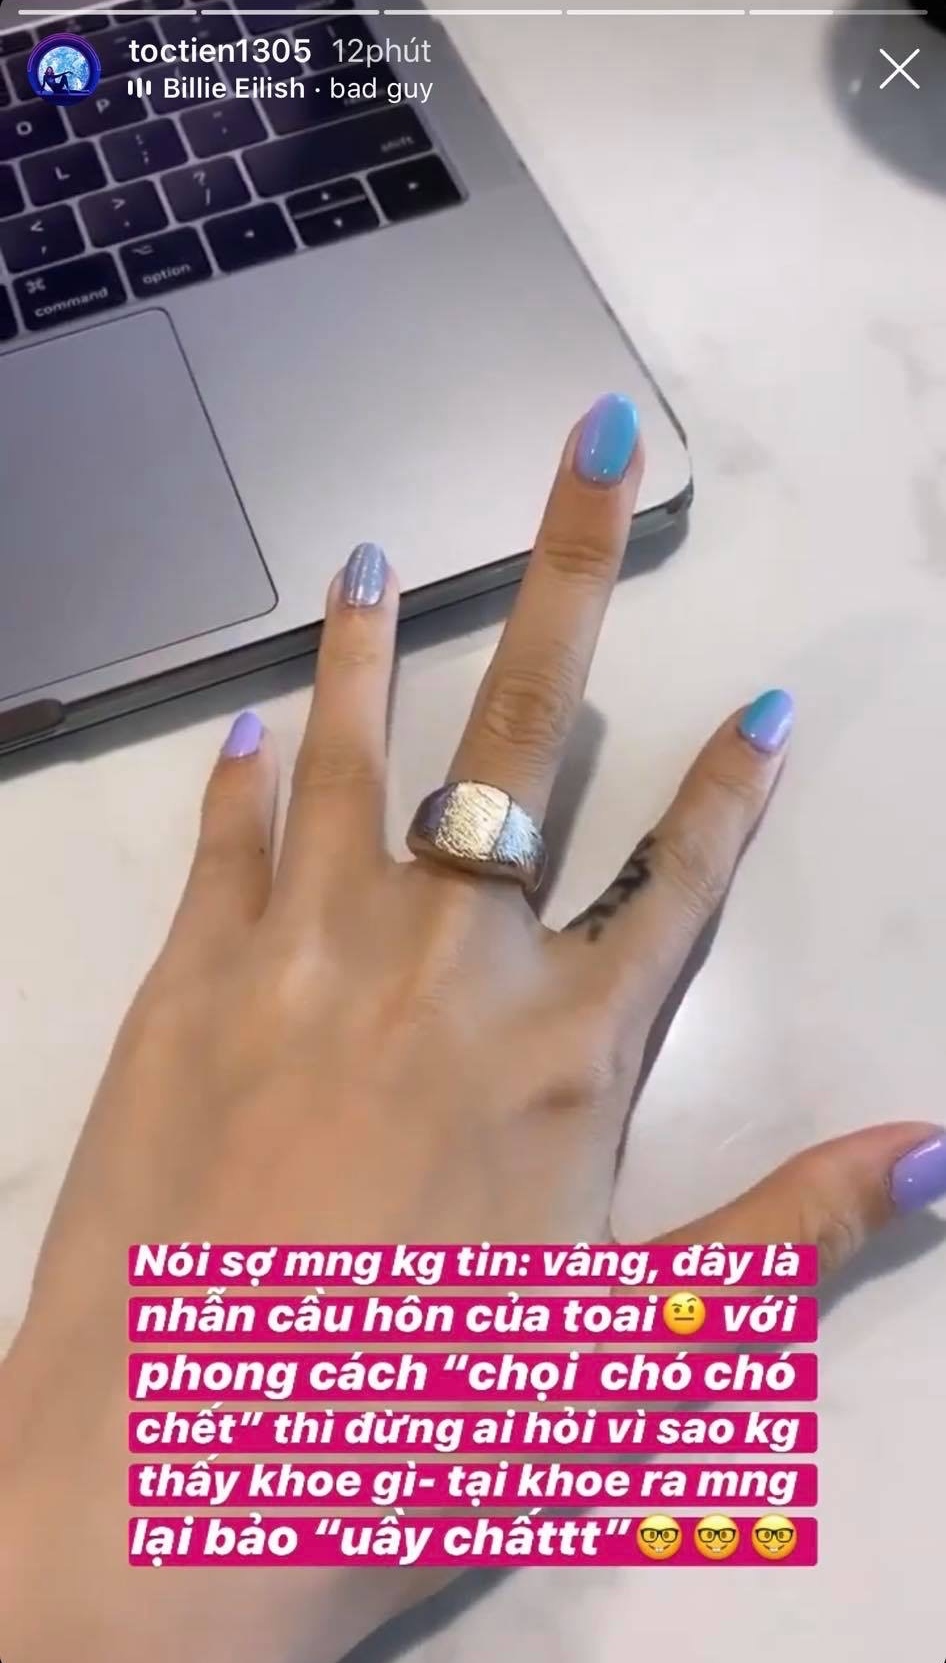  
Tóc Tiên thích thú với chiếc nhẫn cầu hôn độc đáo. (Ảnh: IGNV)